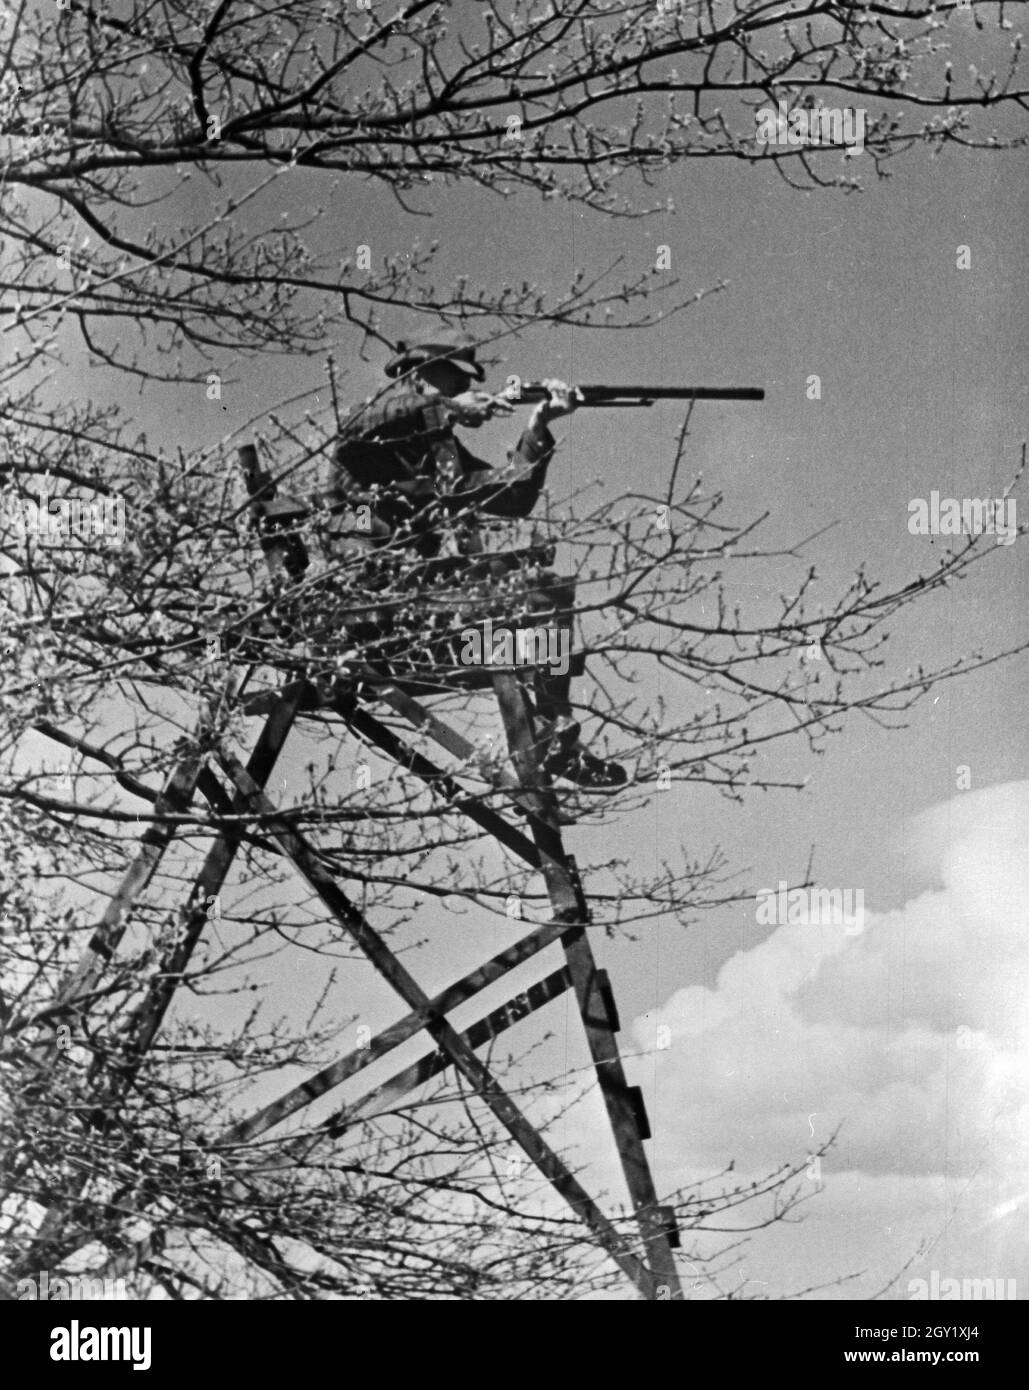 Reproduktion eines Fotos: Jäger schießt von seinem Hochsitz, Deutschland 1930er Jahre. Reproduktion von einem Foto: Jäger schießen von seiner Haltung, Deutschland 1930. Stockfoto